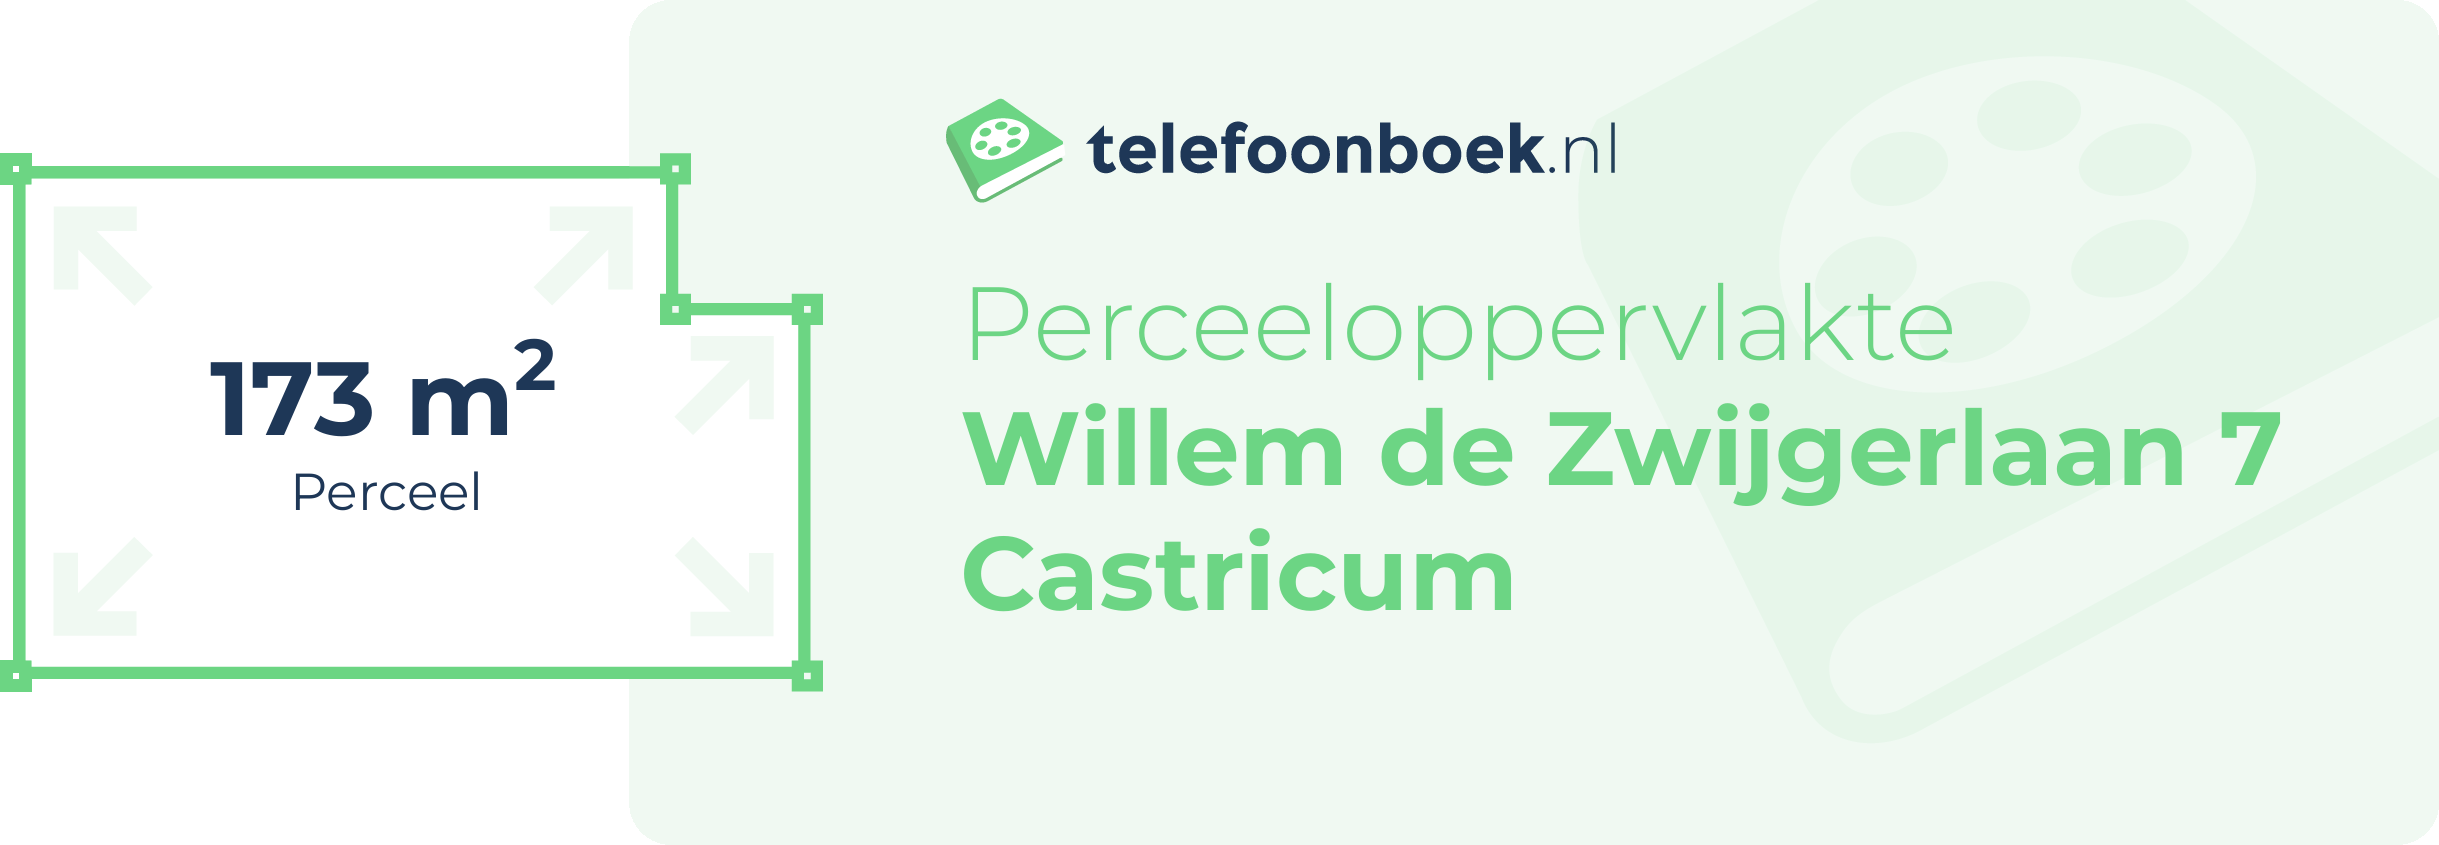 Perceeloppervlakte Willem De Zwijgerlaan 7 Castricum